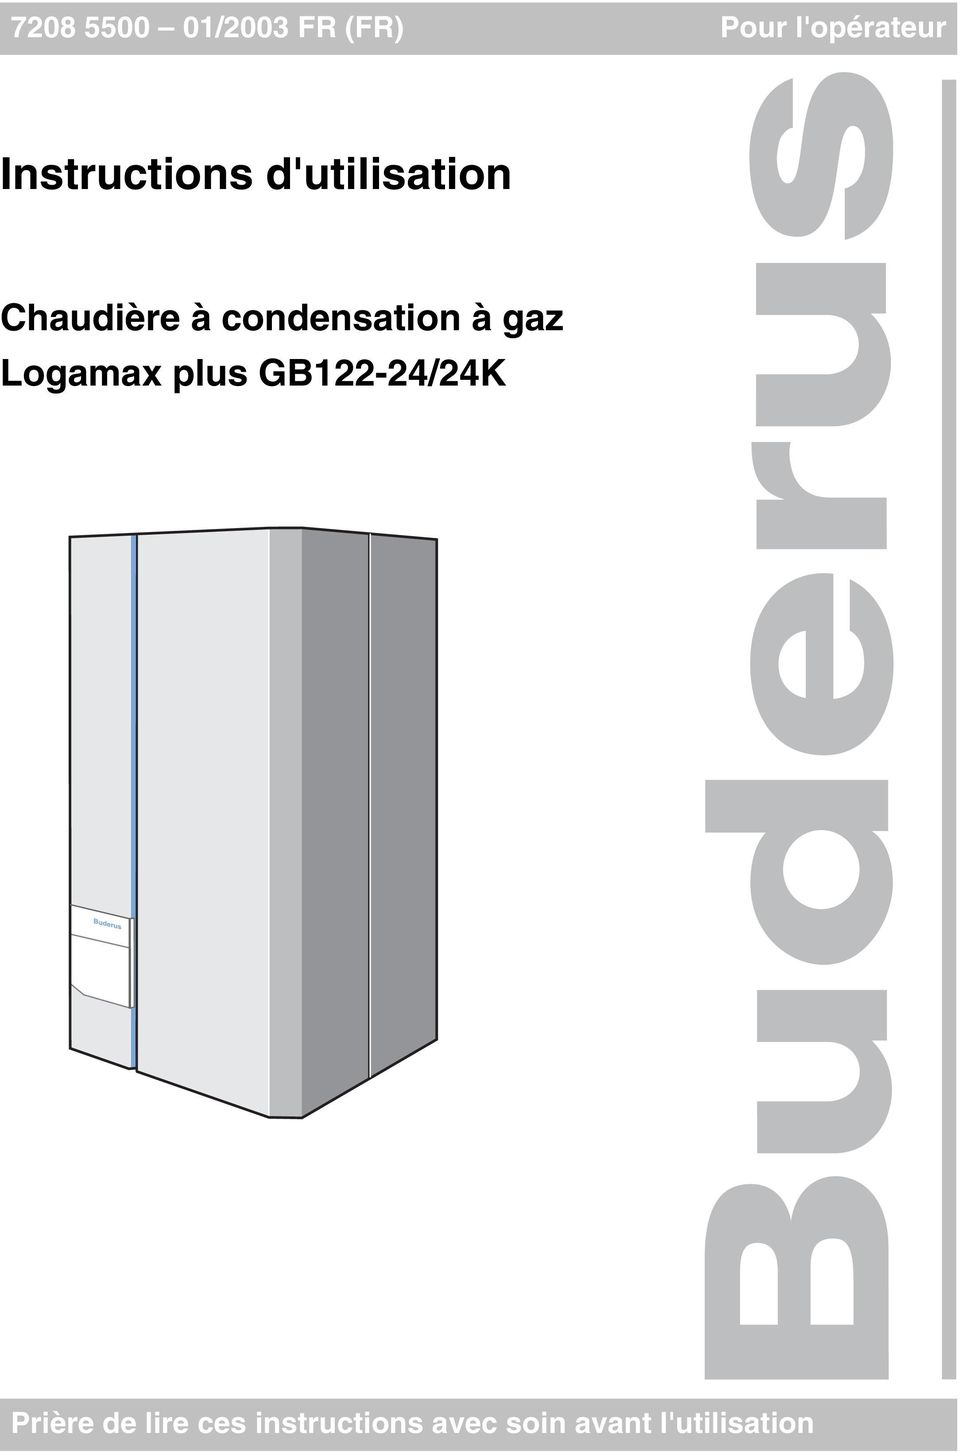 condensation à gaz Logamax plus GB22-24/24K